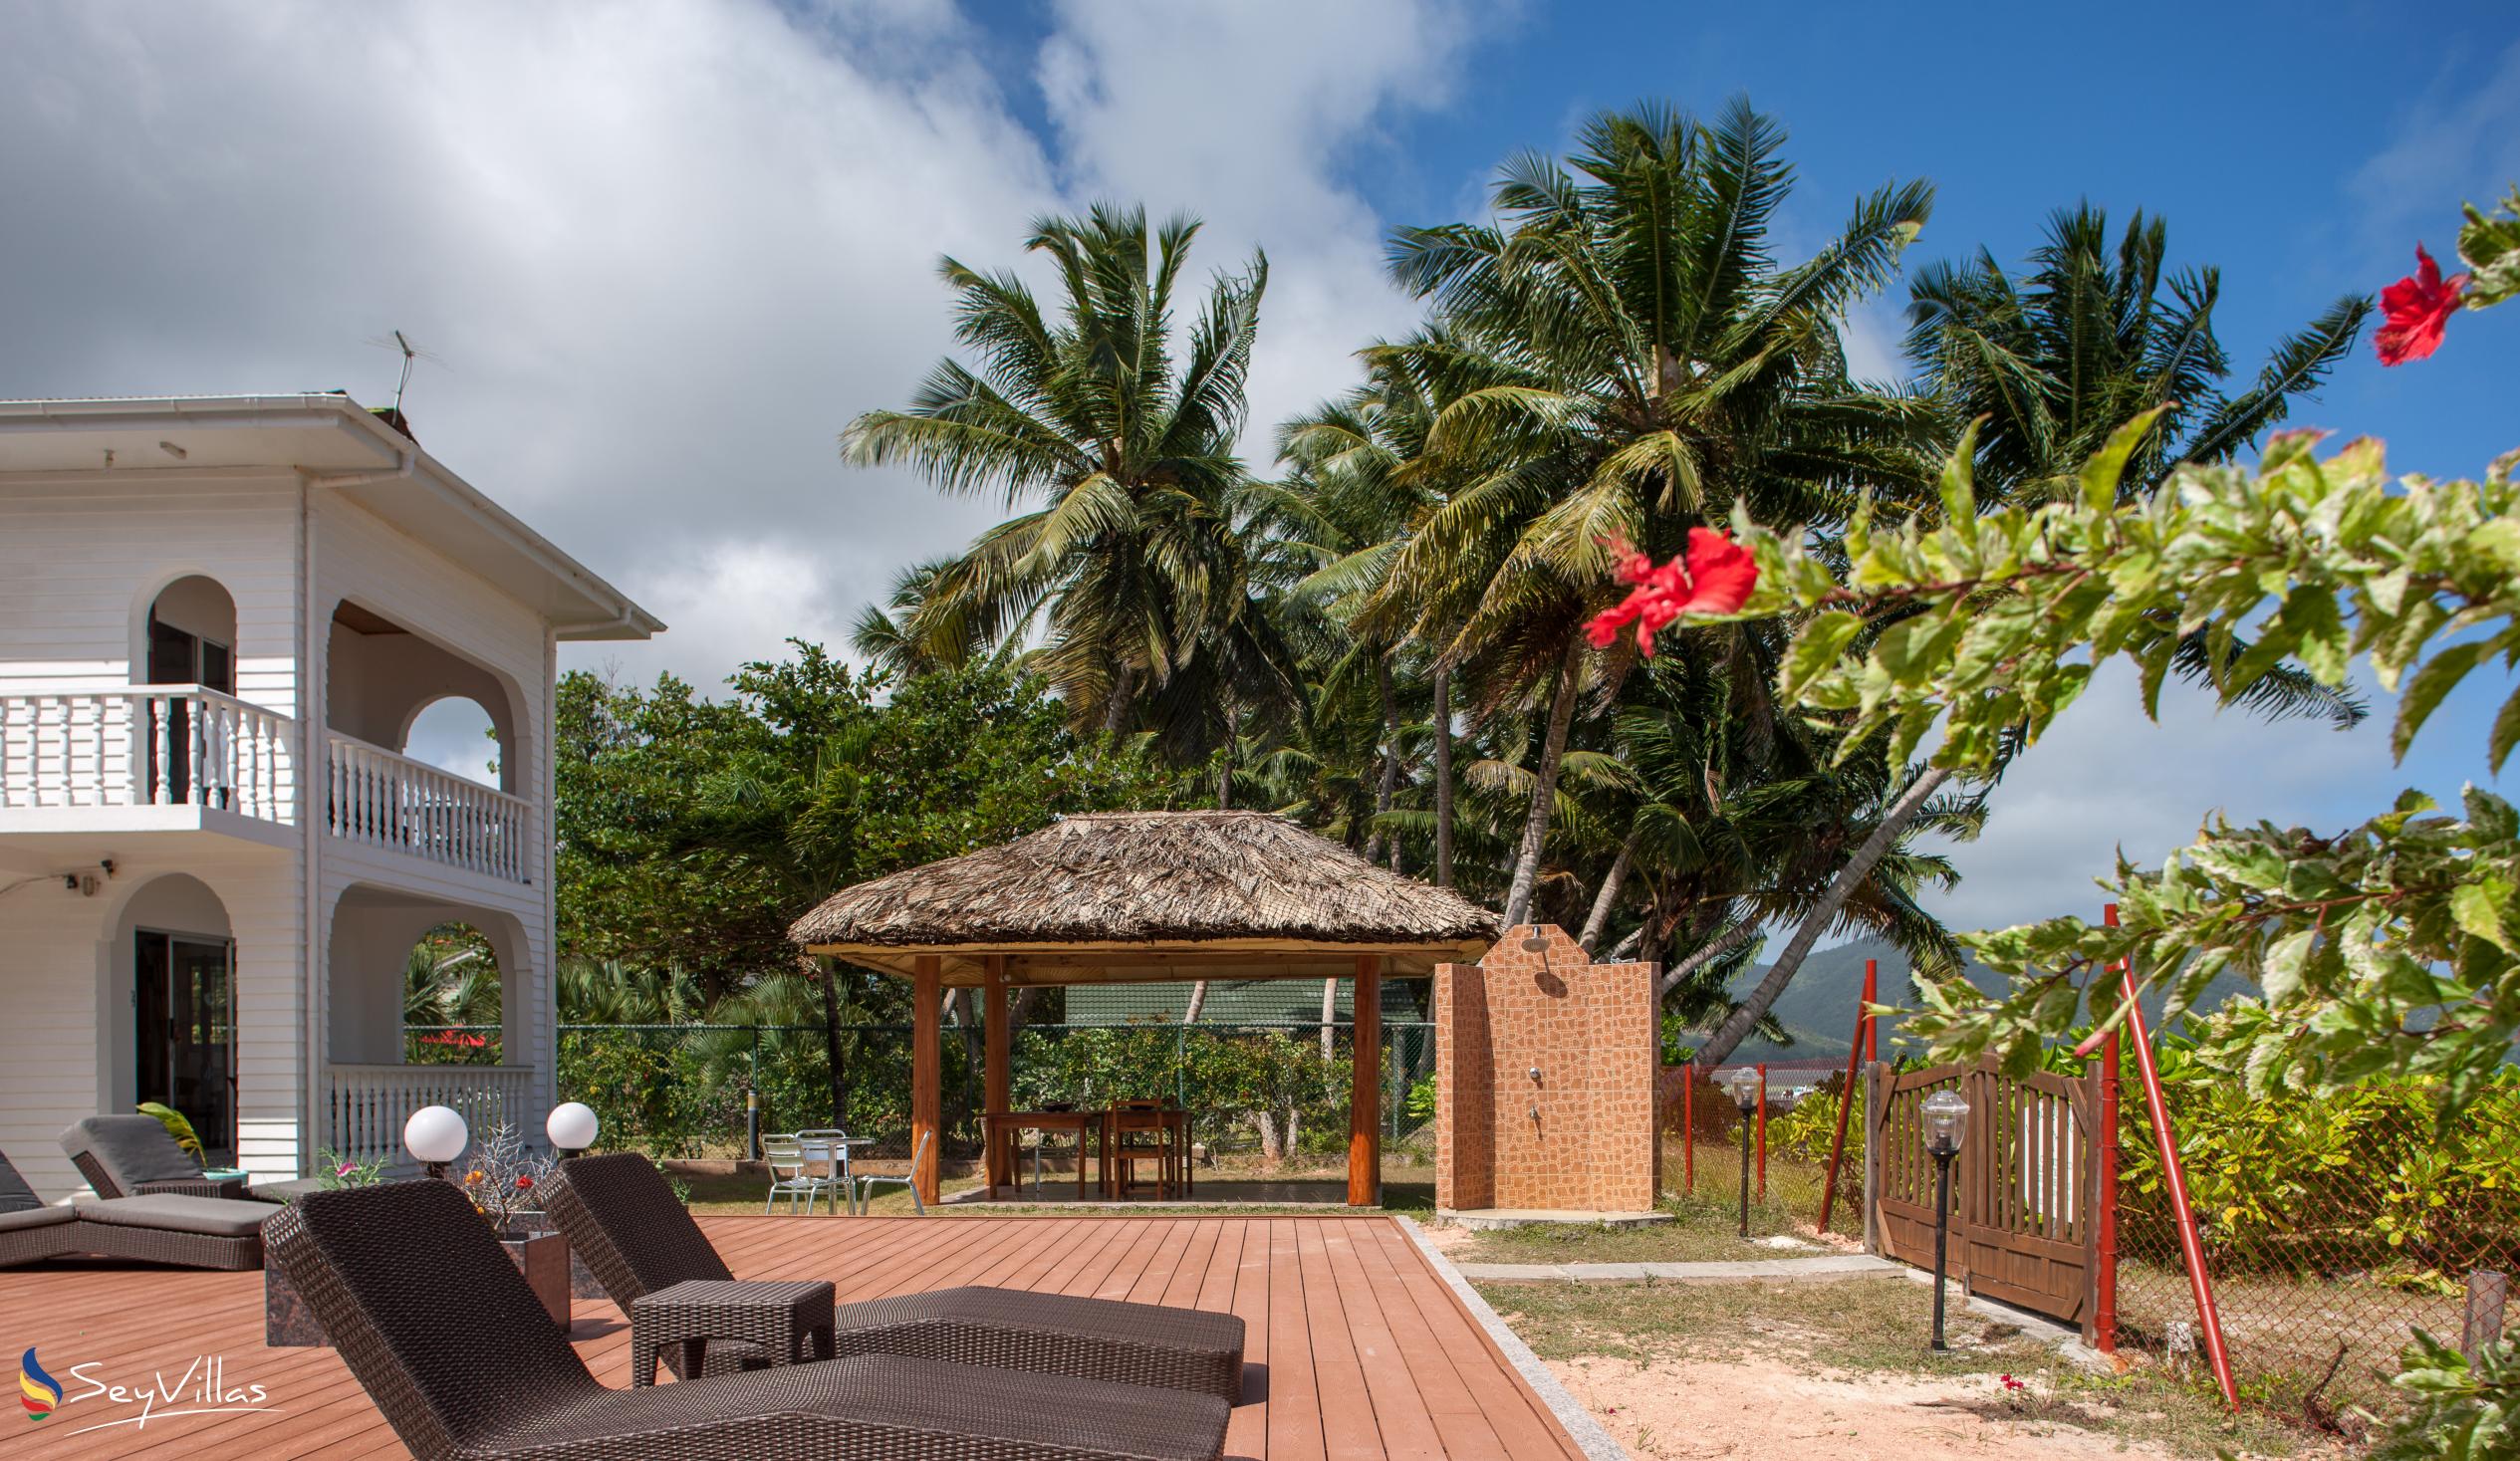 Foto 14: Le Tropique - Aussenbereich - Praslin (Seychellen)